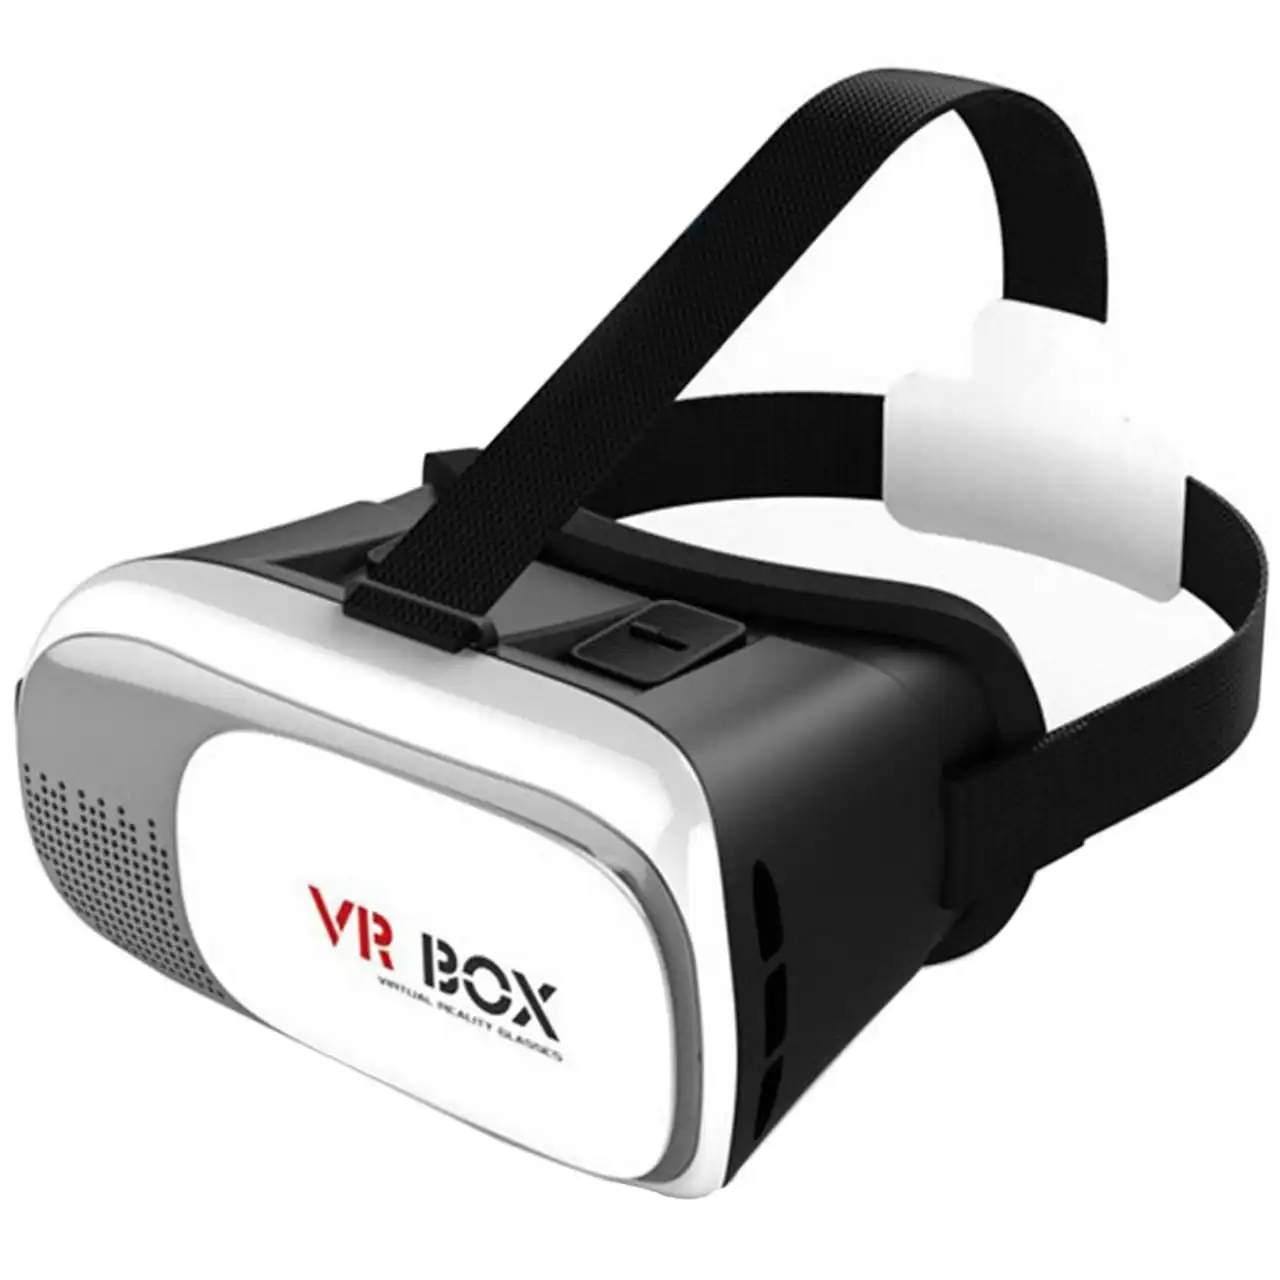  هدست واقعیت مجازی وی آر باکس مدل VR Box 2 به همراه ریموت کنترل بلوتوث و DVD  حاوی اپلیکیشن و باتری